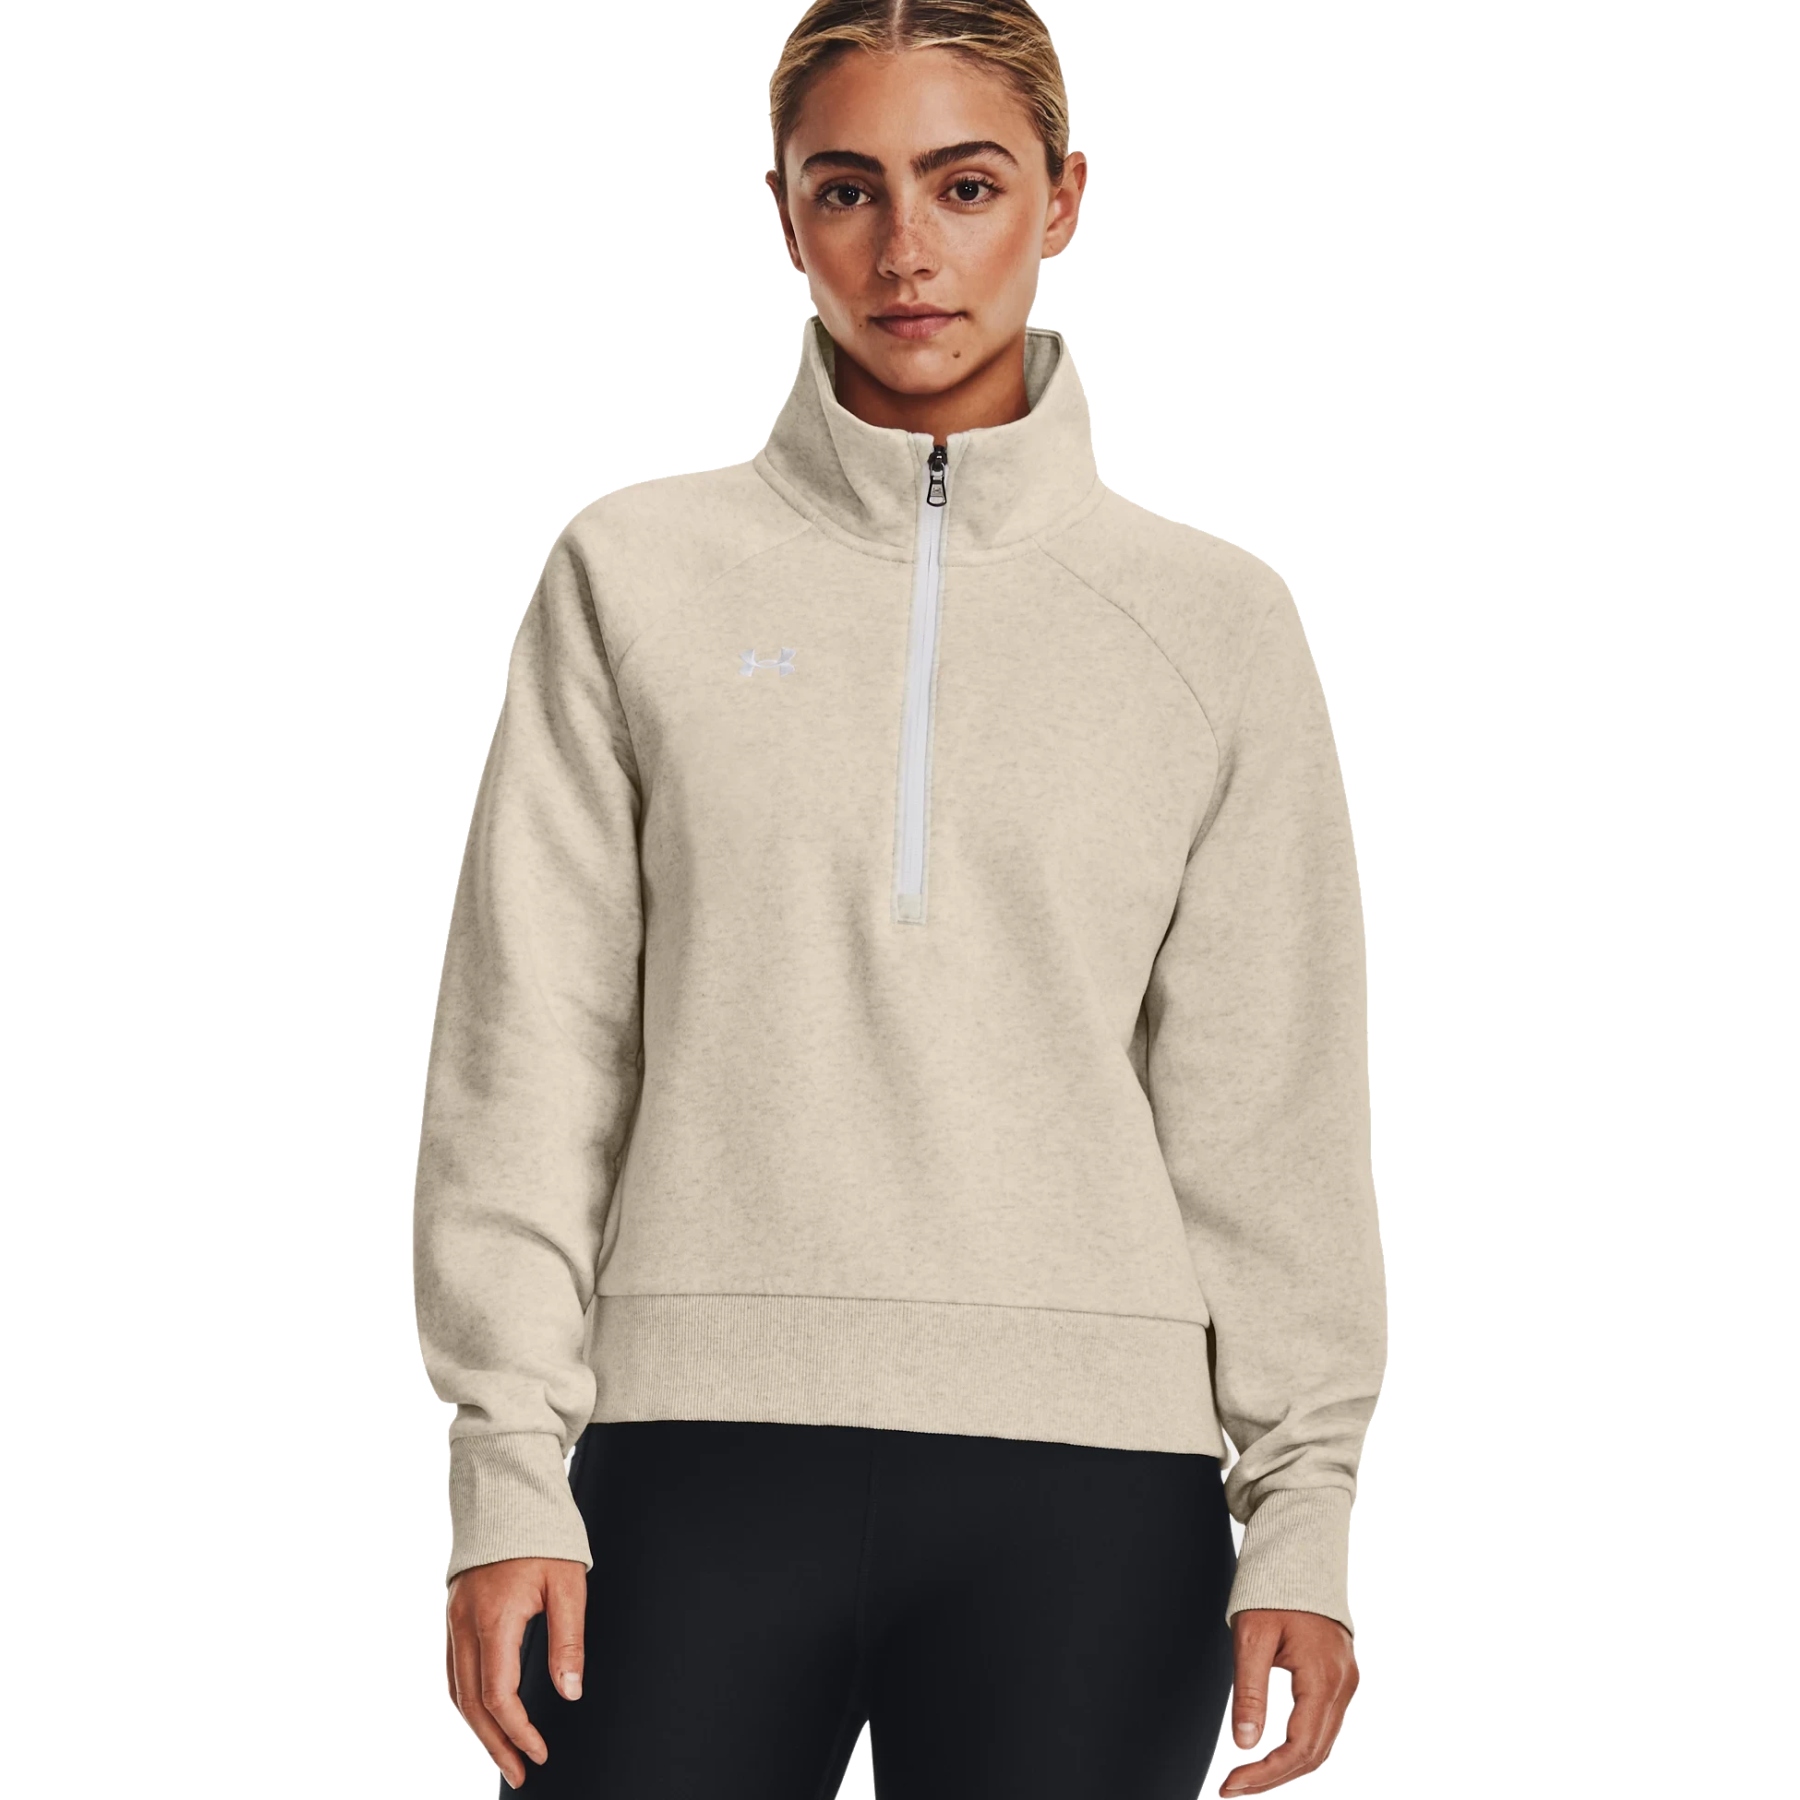 Produktbild von Under Armour UA Rival Fleece Sweatshirt mit ½ Zip Damen - Oatmeal Light Heather/White